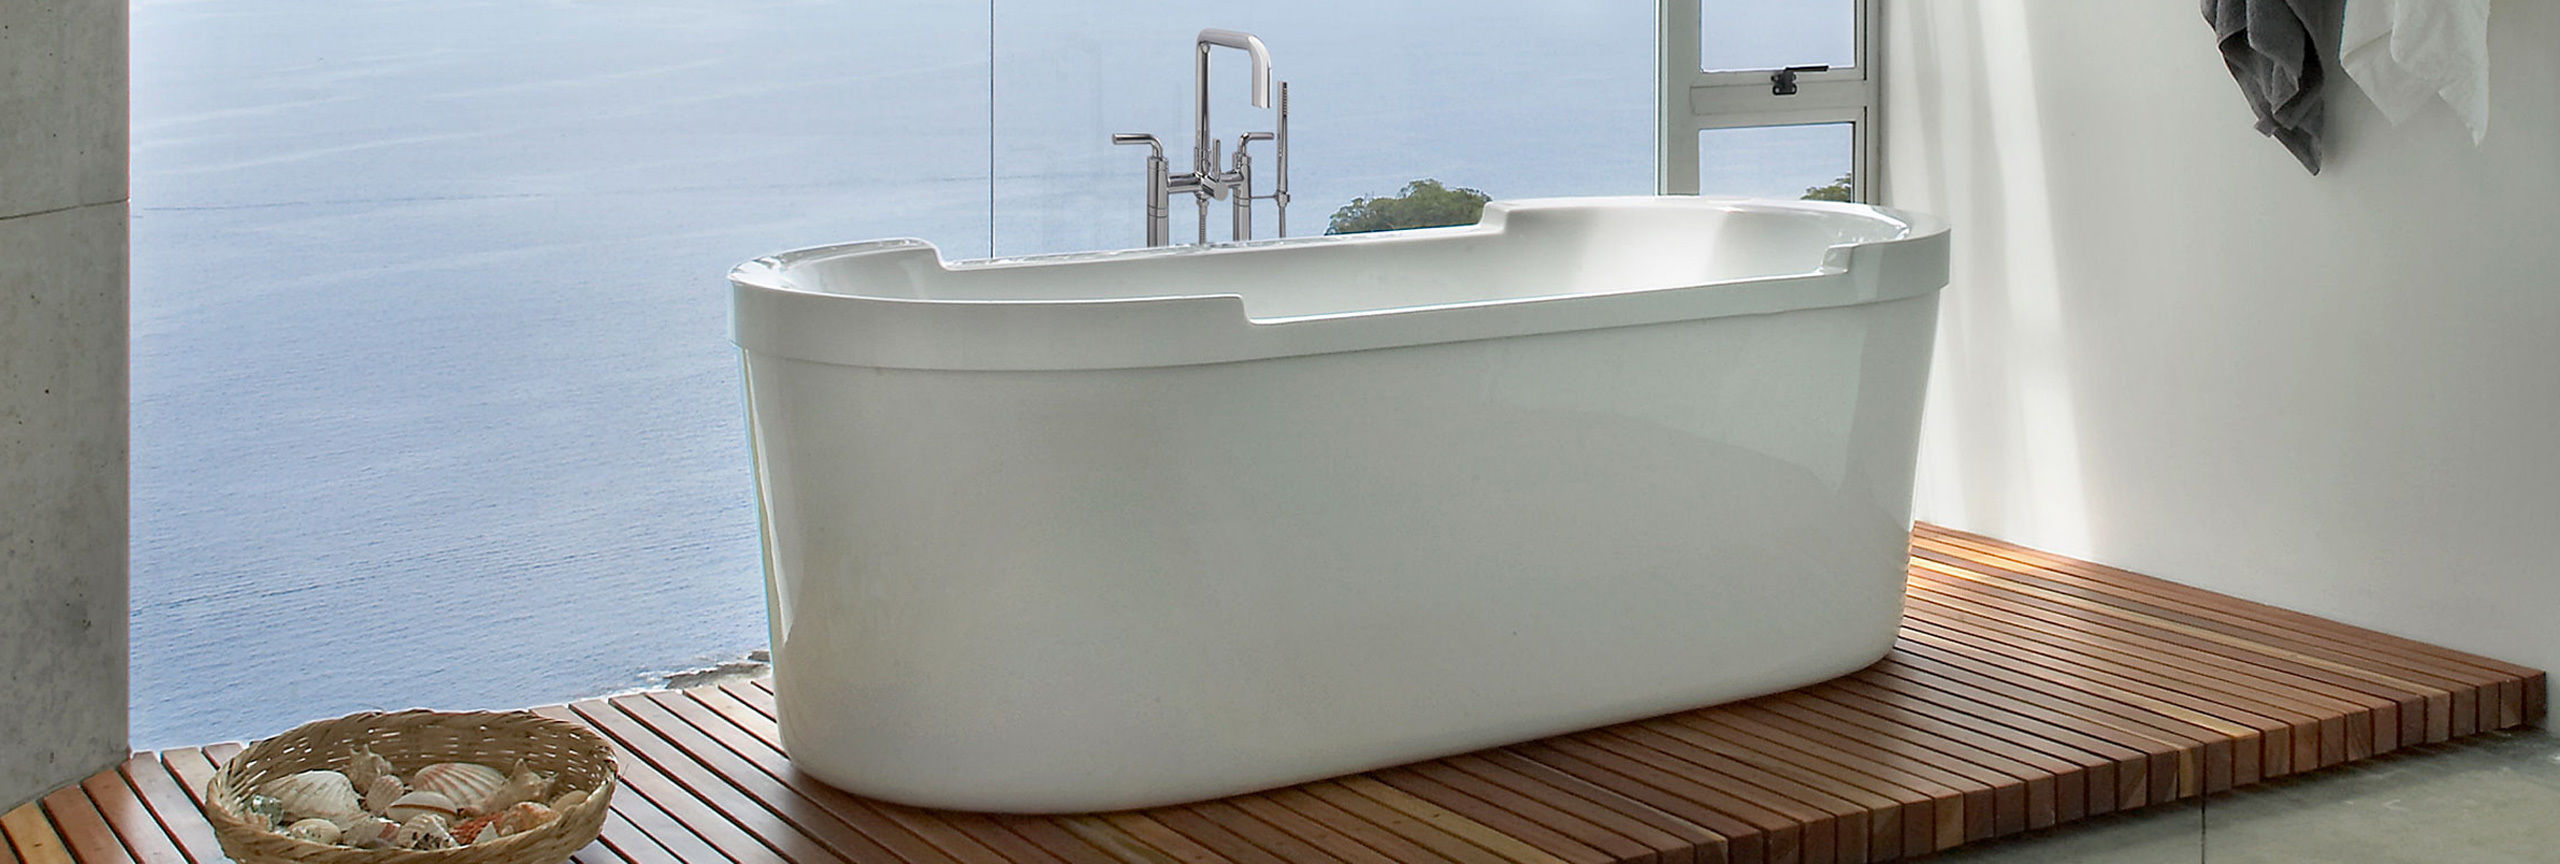 Bathroom series Bolsa floor mount tub filler with tub on teak flooring